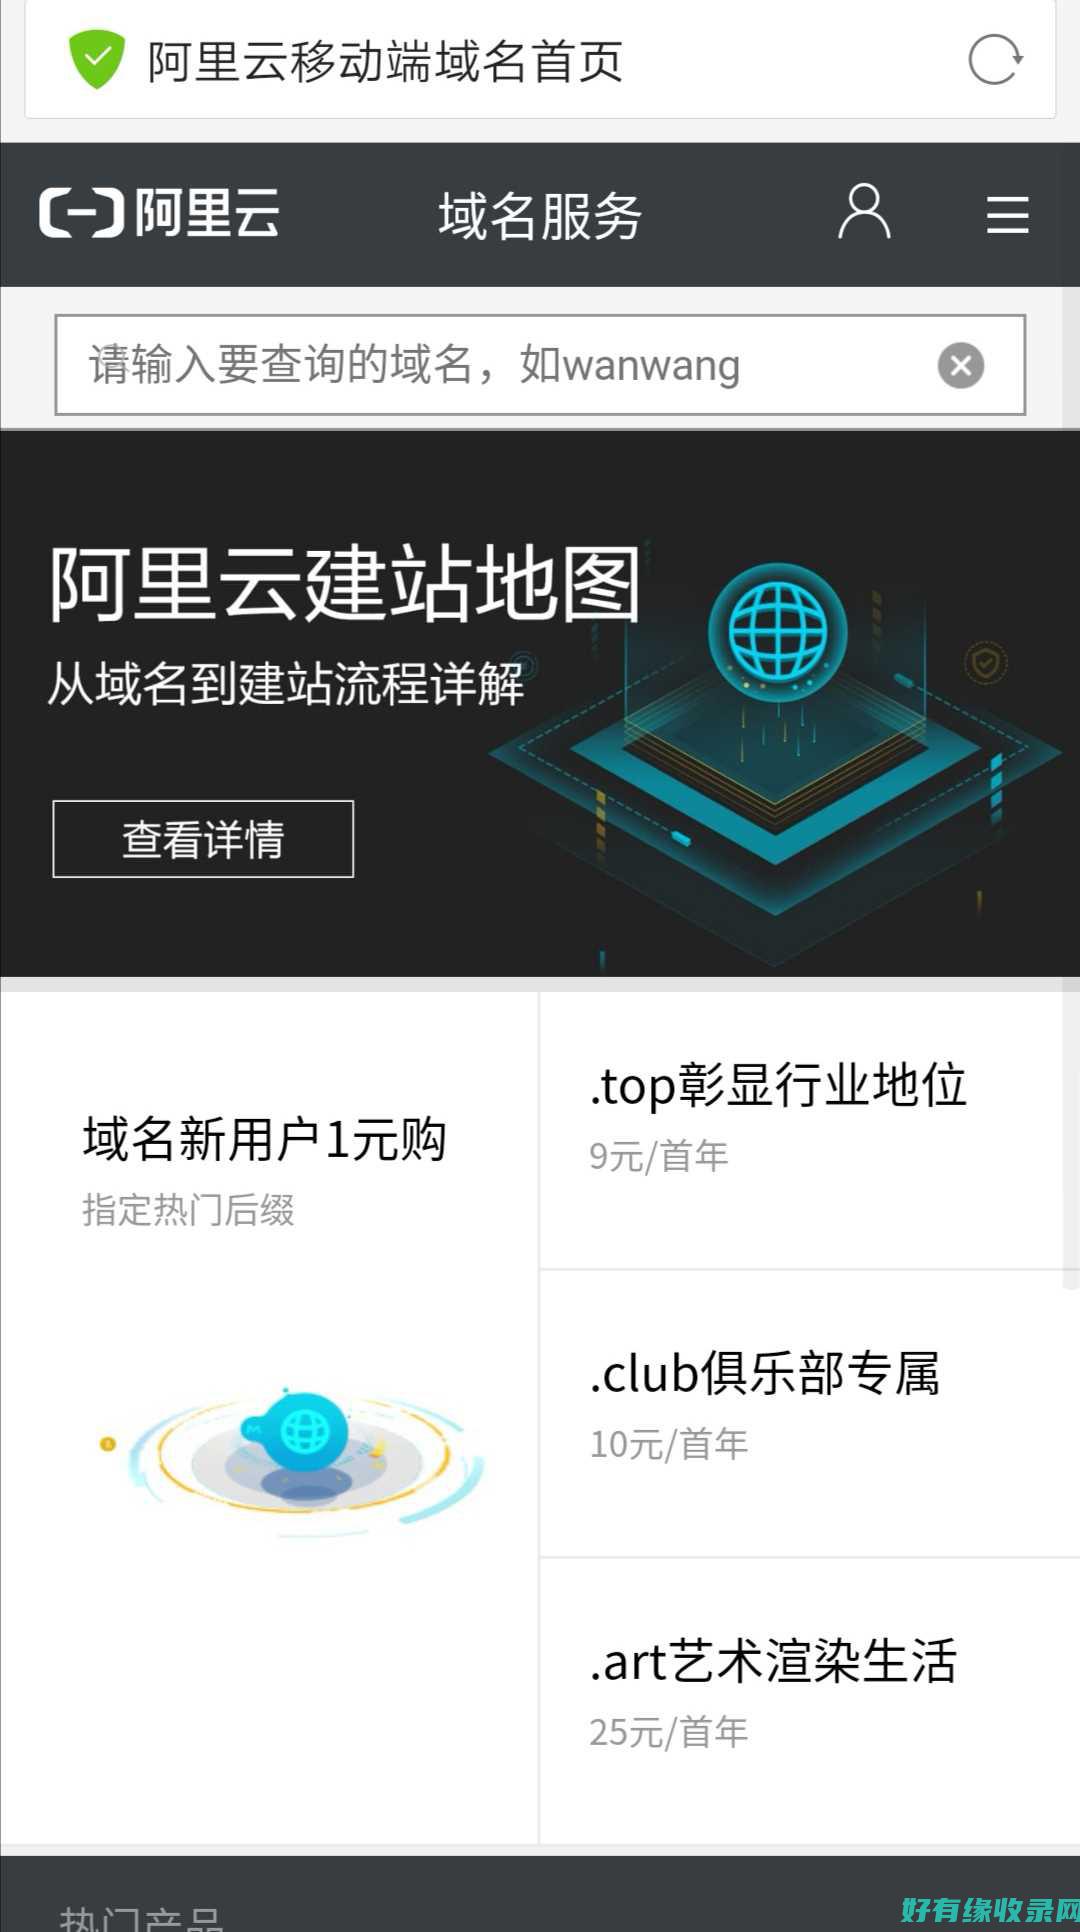 万网官网：聚焦中国企业的数字化转型之路 (万聚网络科技有限公司)